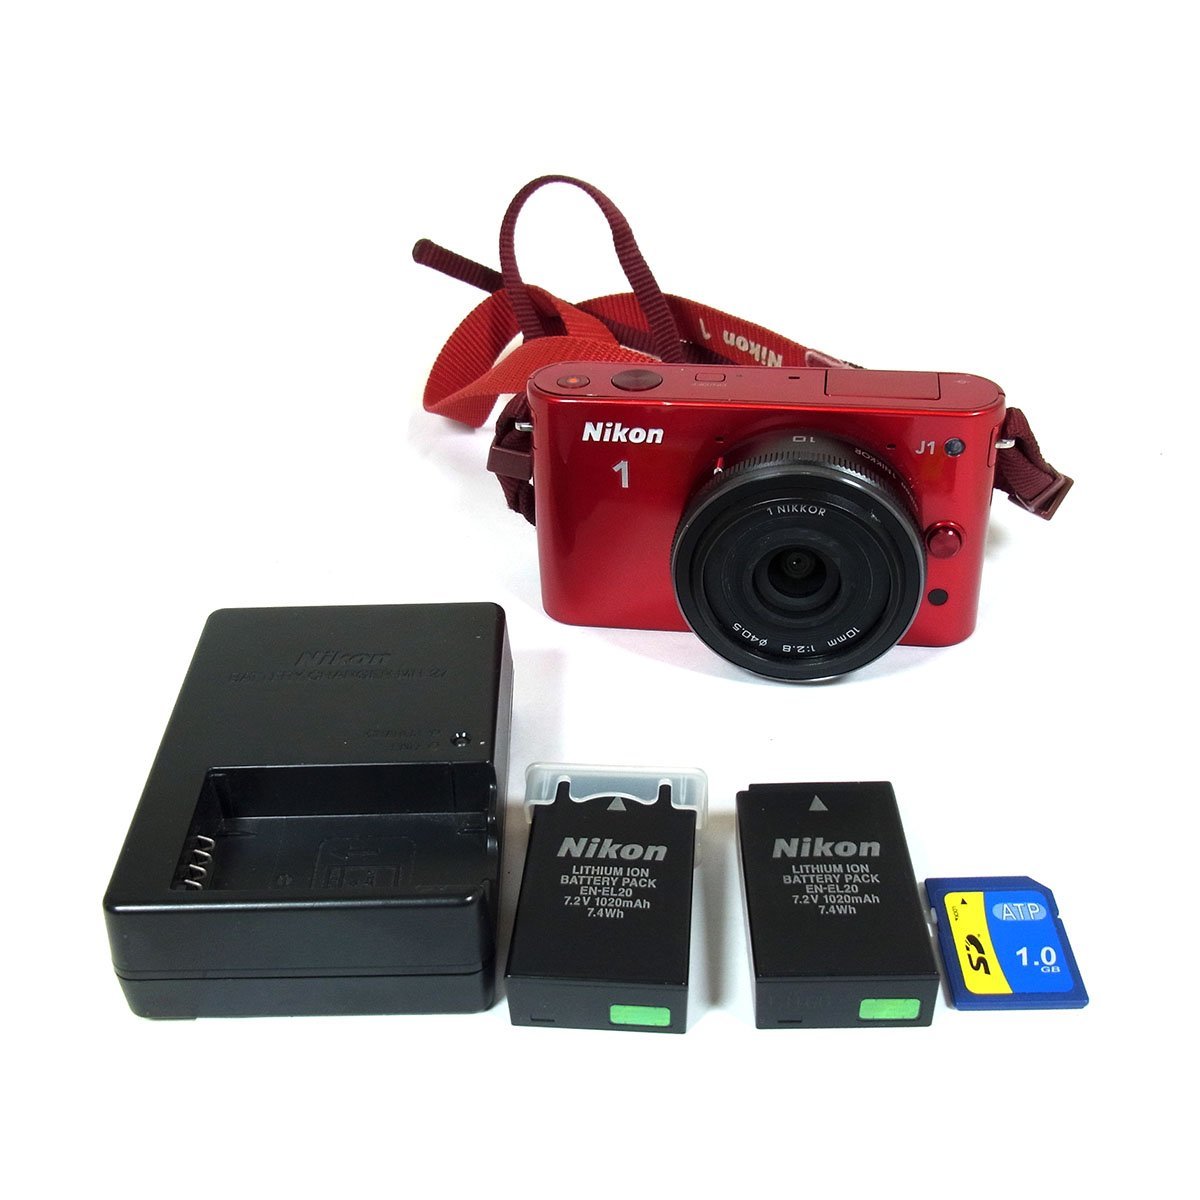 ニコン 1 J1 デジタルカメラ レッド レンズ10mm 1:2.8 通電 動作確認済み 訳アリ品 付属品 Nikon ◆_画像7